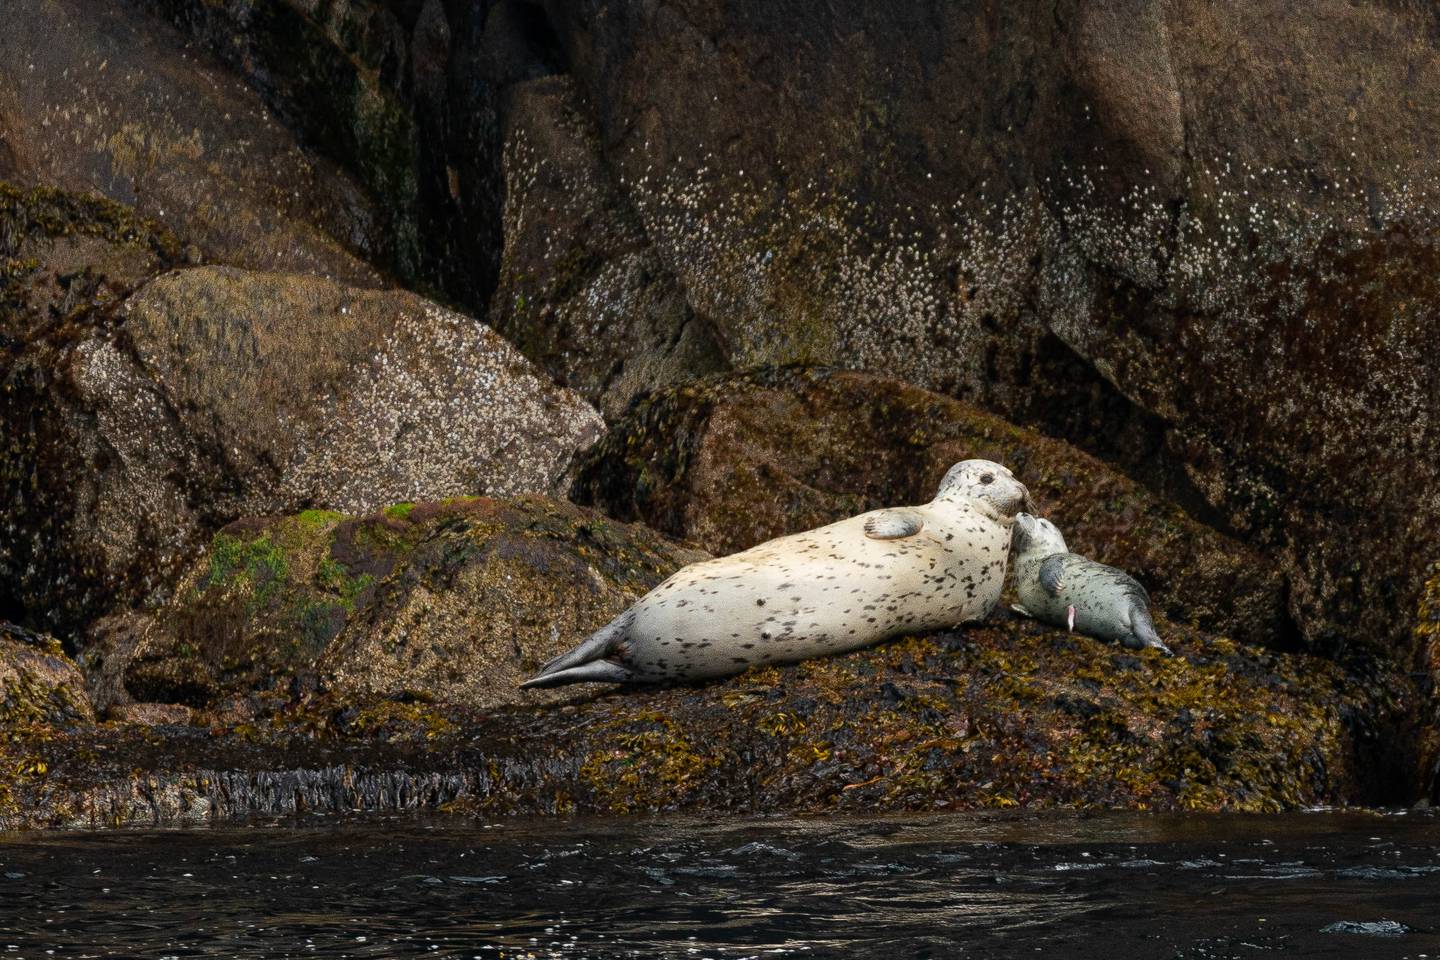 Kenai Fjords National Park, Resurrection Bay, harbor seal, seal